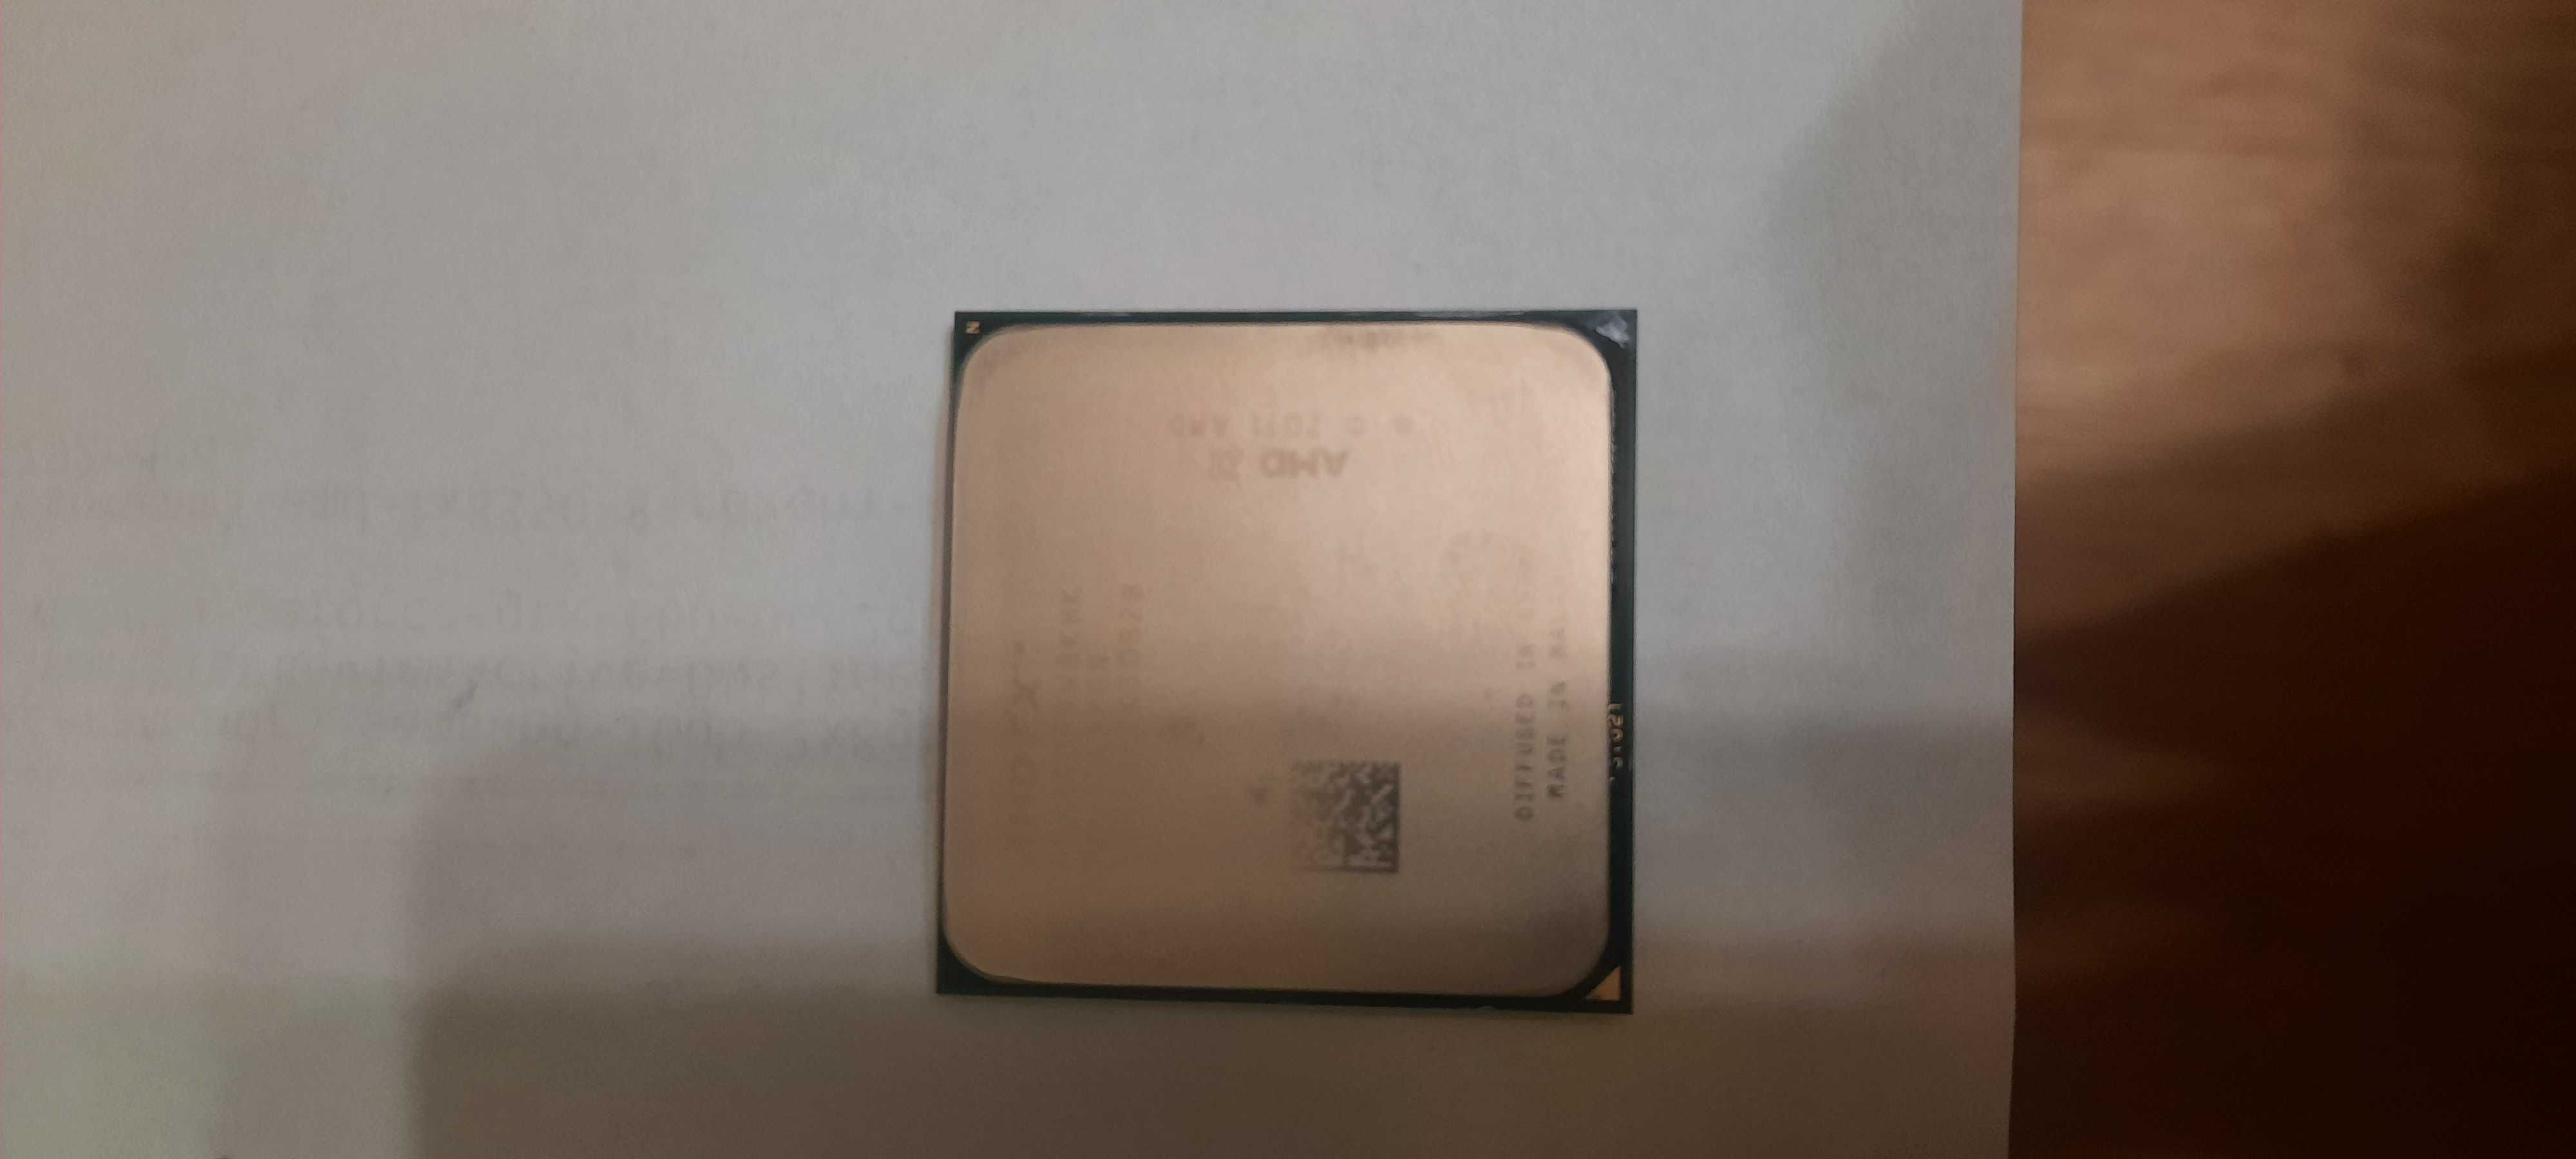 Procesor AMD FX-8350  8×4 GHz  AM3+